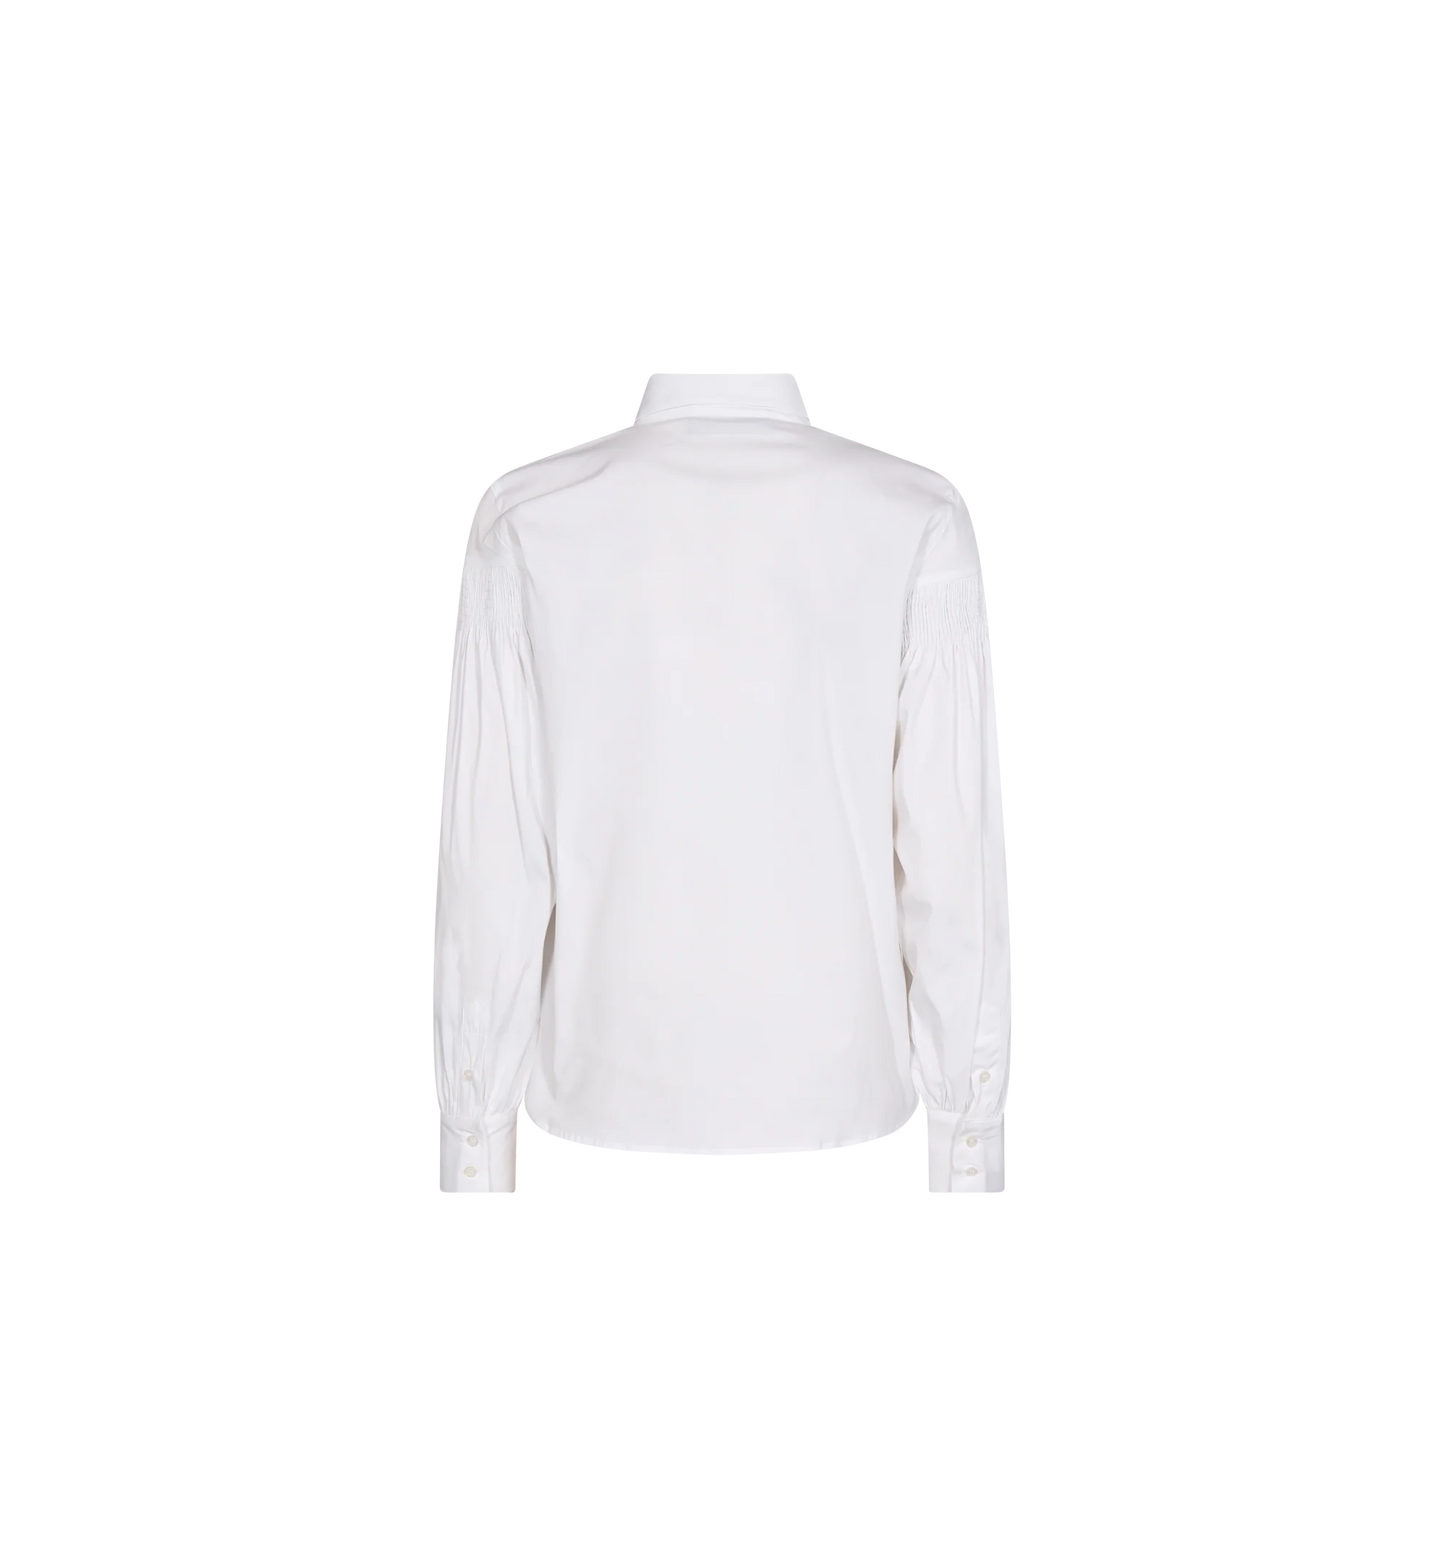 Cintra White Shirt